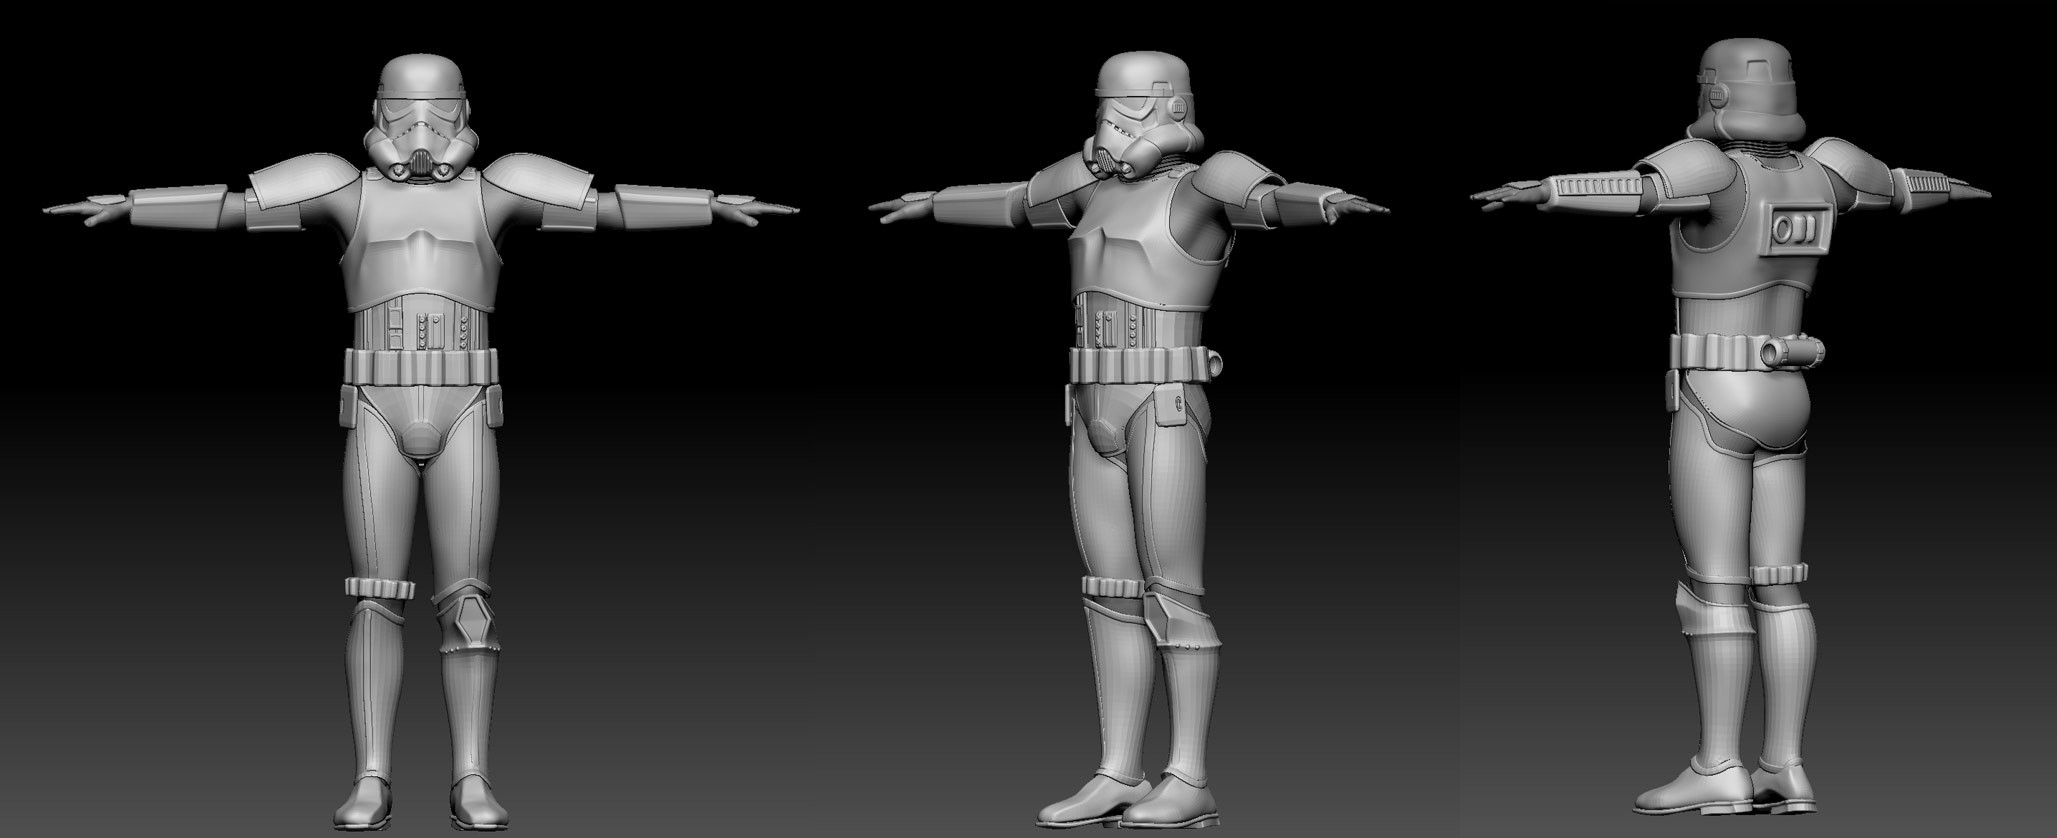 Storm trooper suit sculpt